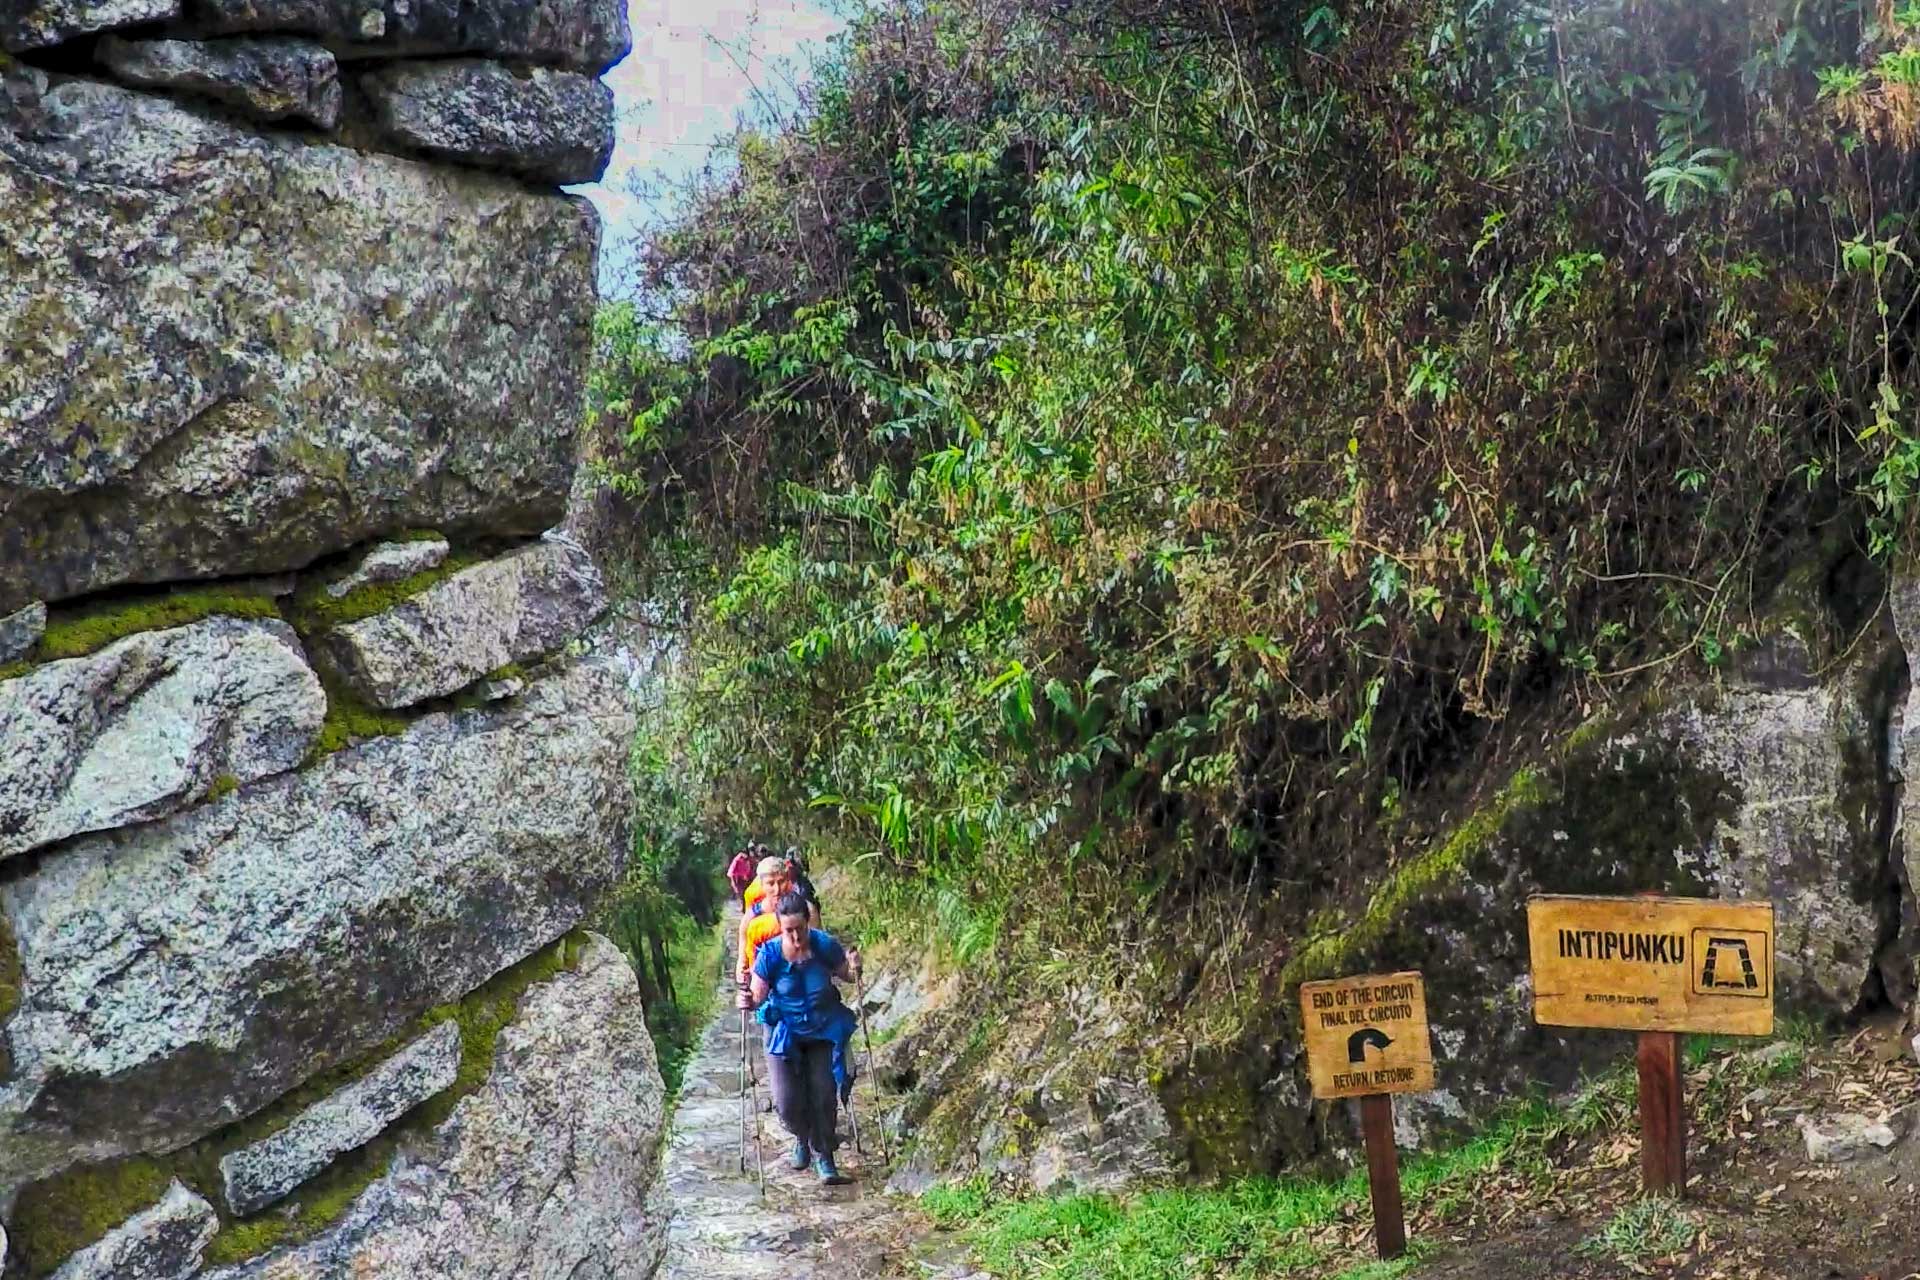 La meilleure façon d’atteindre le Machu Picchu: Chemin Inca, Tour Inka Jungle, Randonnée du Salkantay ou Train?